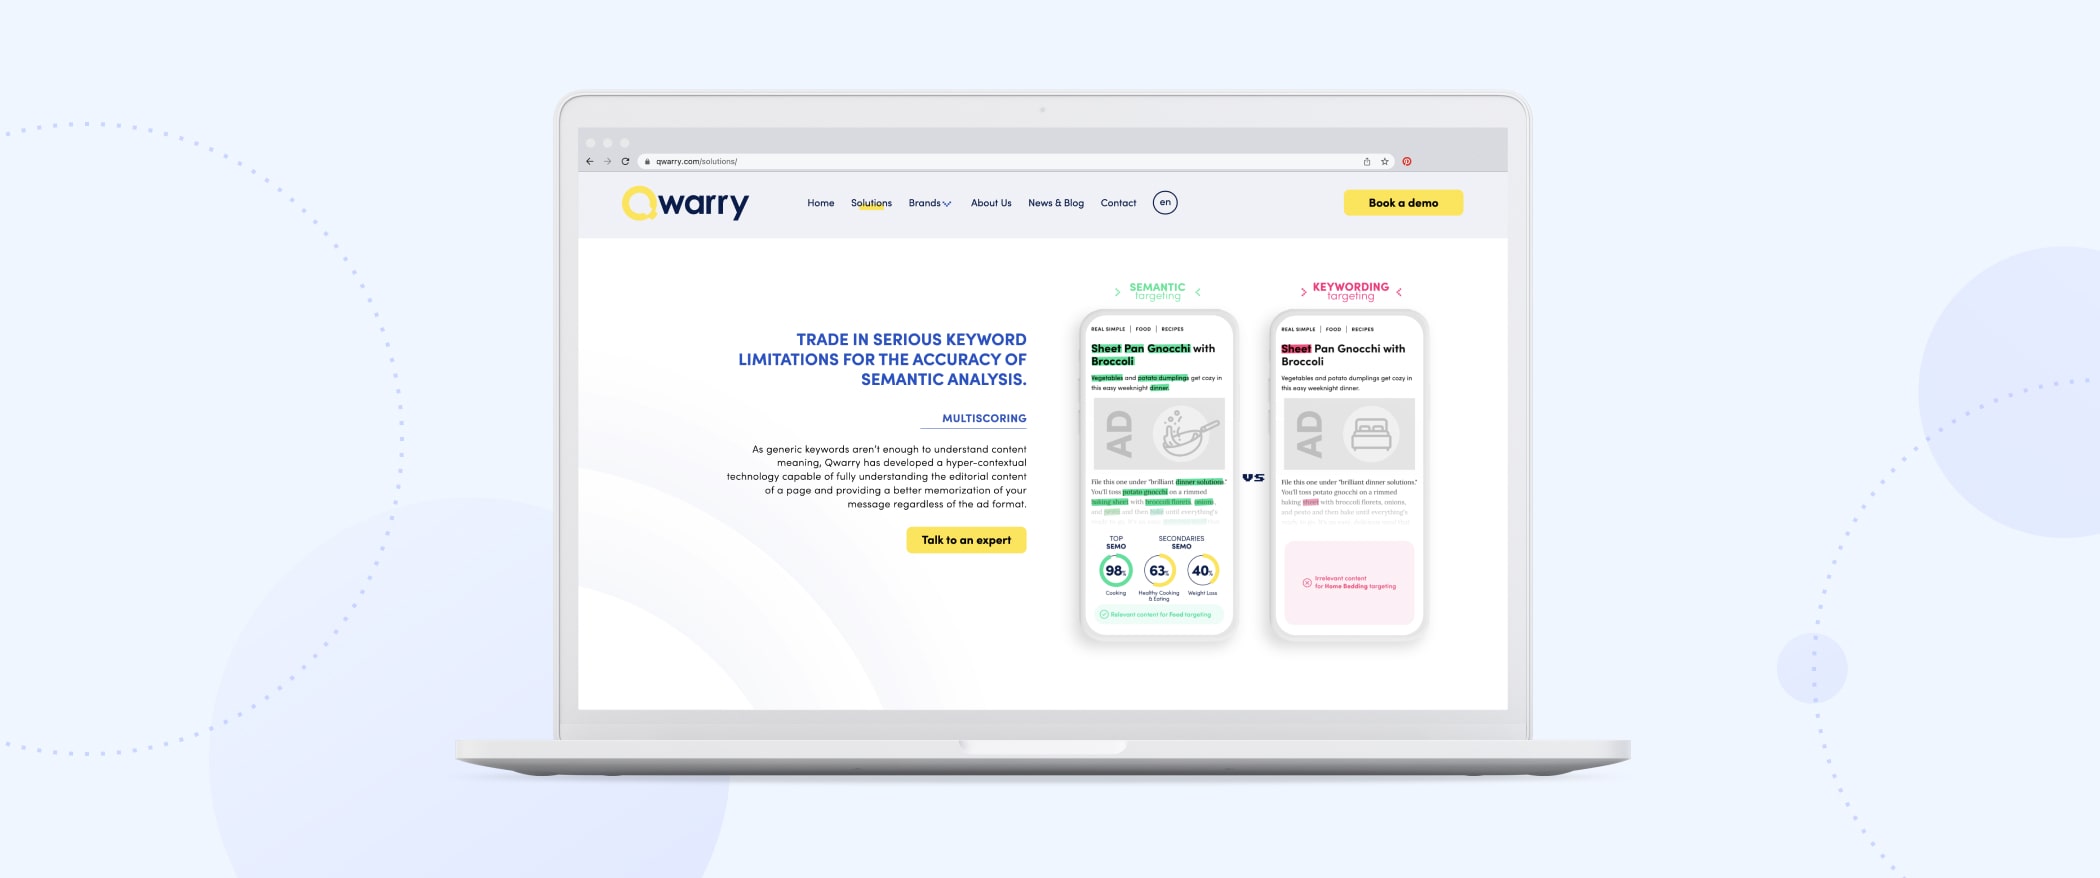 Qwarry-Adtech startup